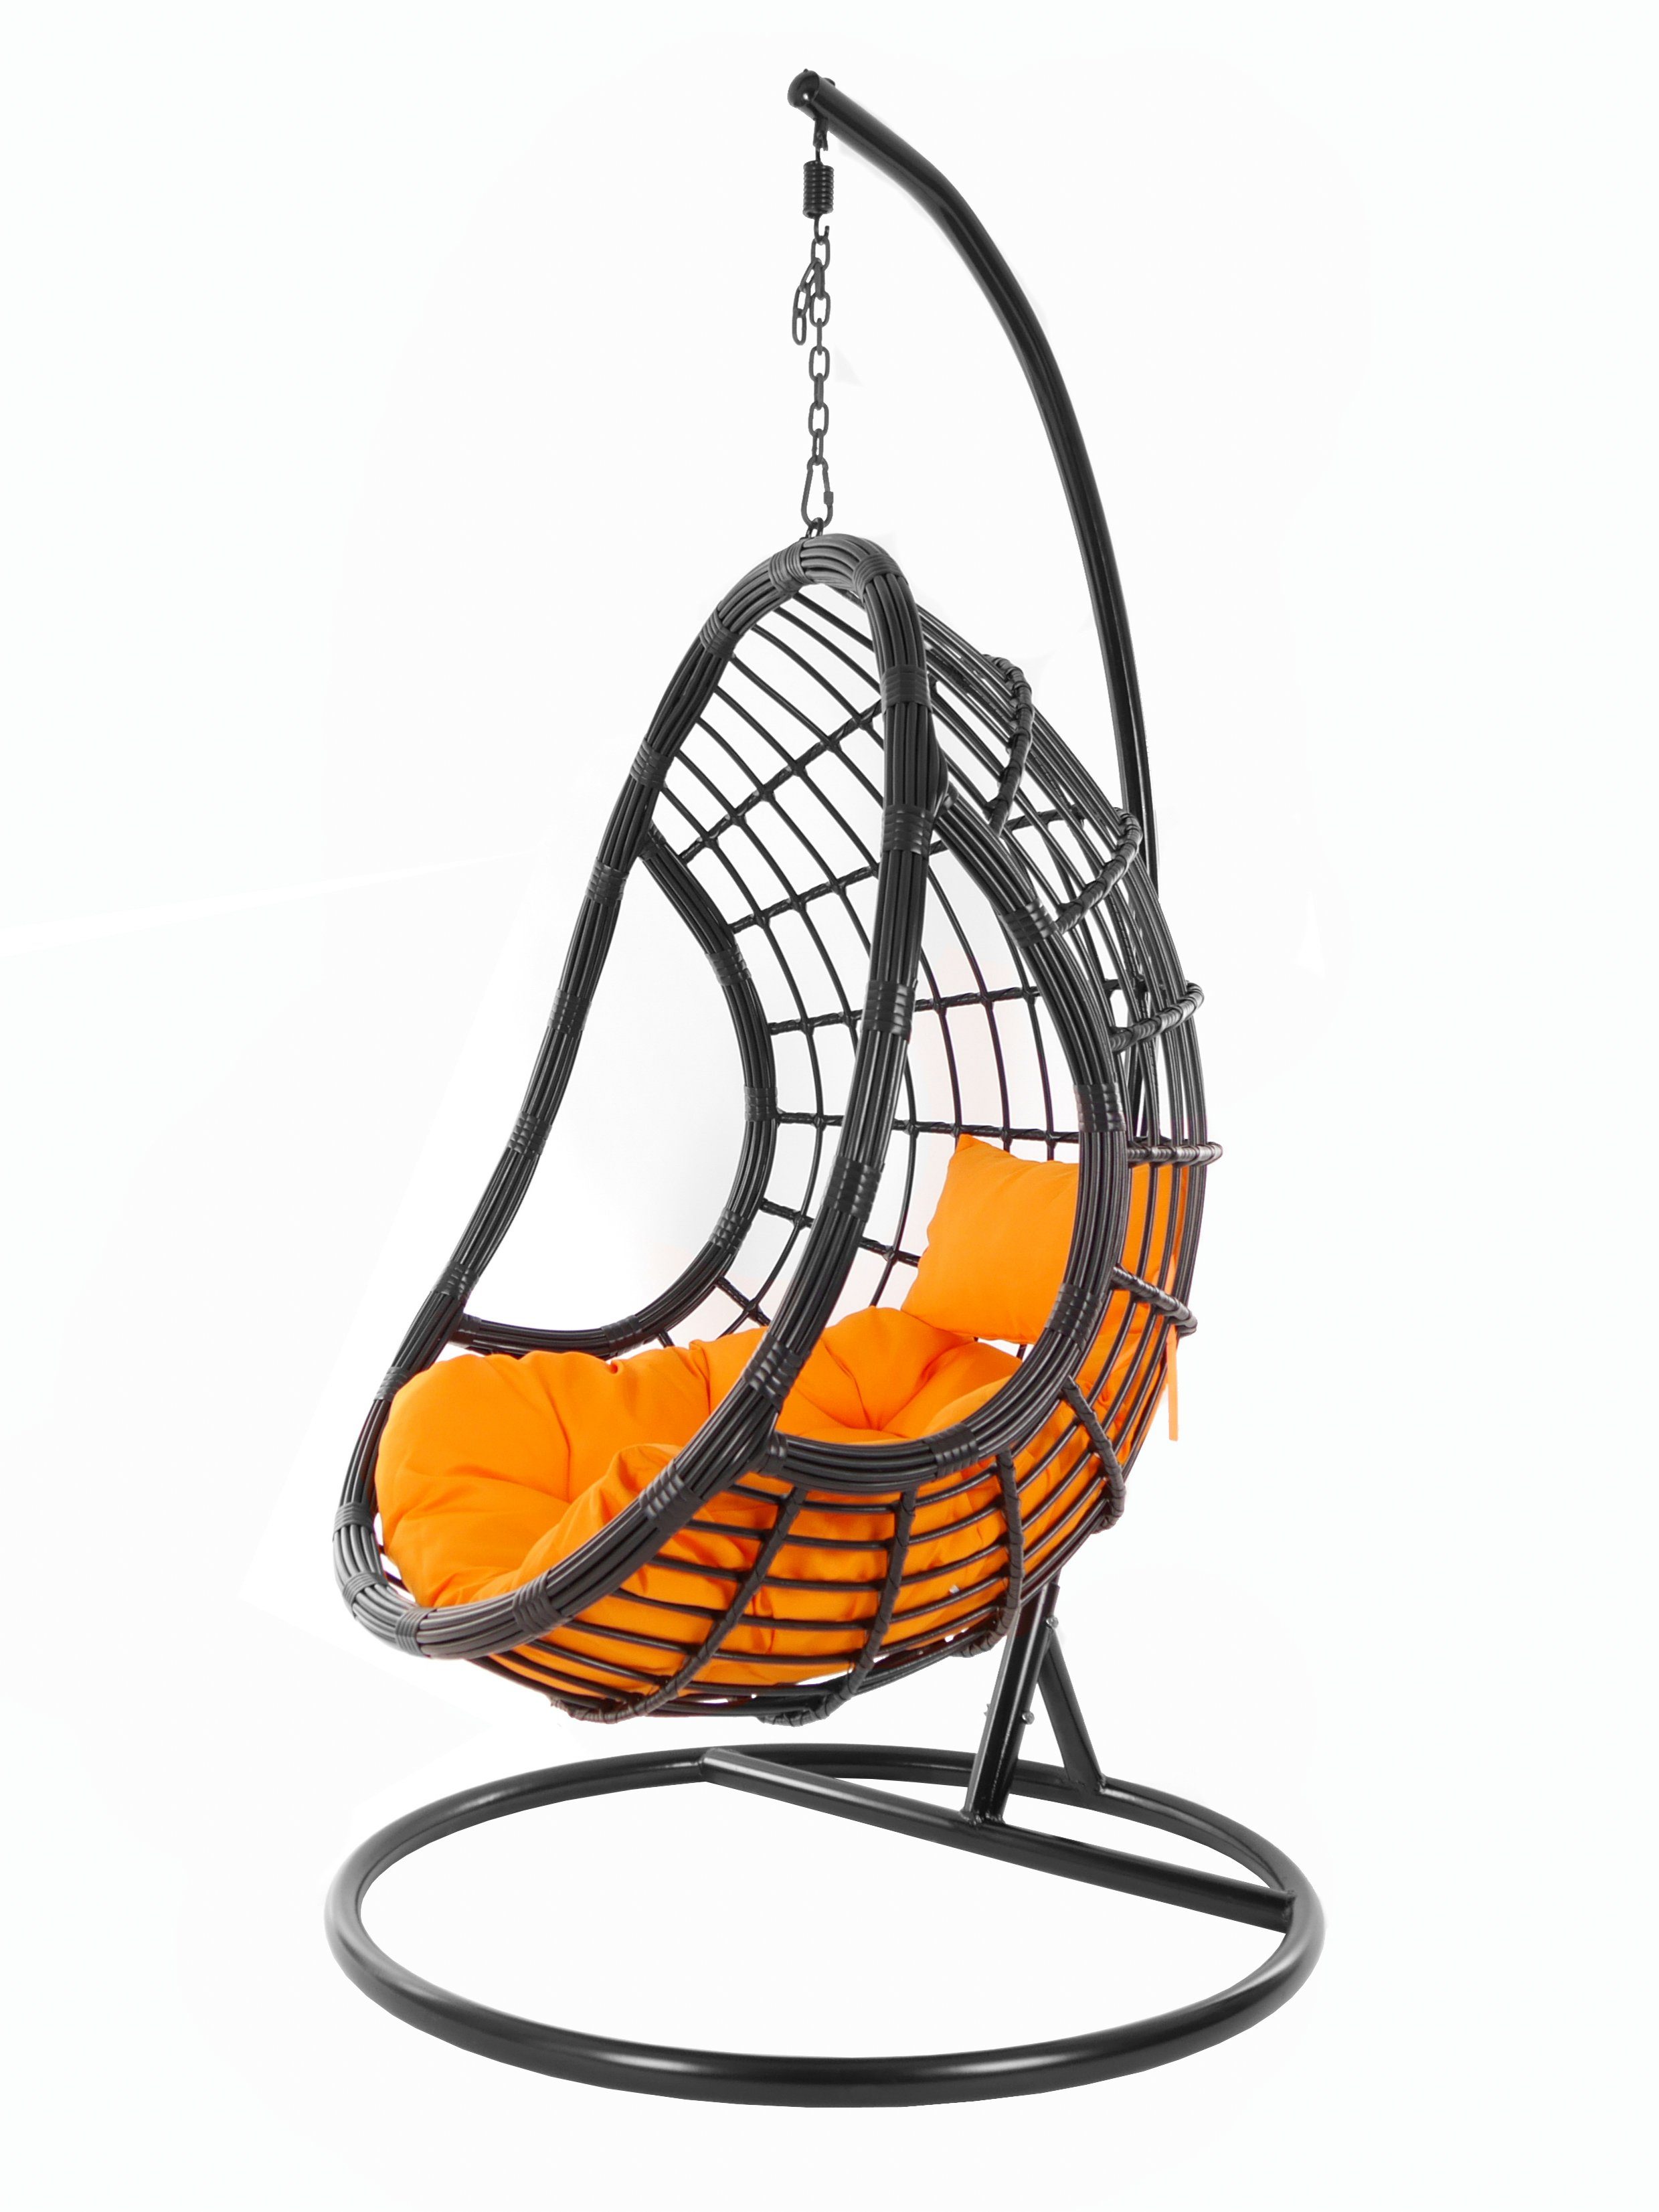 KIDEO Hängesessel PALMANOVA black, Swing Chair, Kissen, edles Loungemöbel, Design Gestell tangerine) schwarz, orange Hängesessel Schwebesessel, und (3030 mit